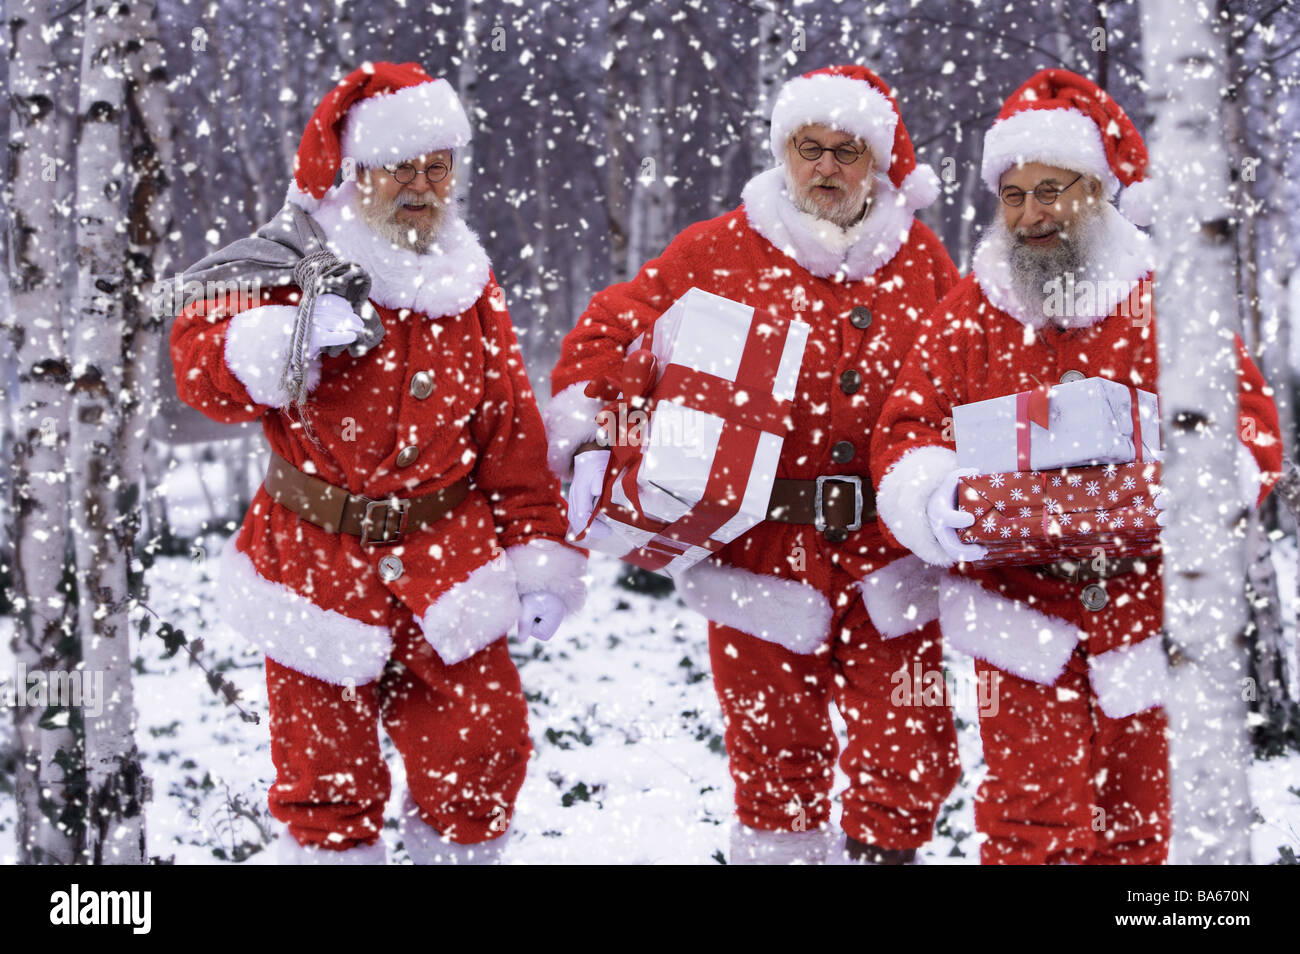 Menschen tragen Wald Schneegestöber Weihnachtsmann Geschenke Weihnachten Männer, die drei Gläser Bärte Weihnachtsgeschenke liefert Outfits zu verschleiern Stockfoto